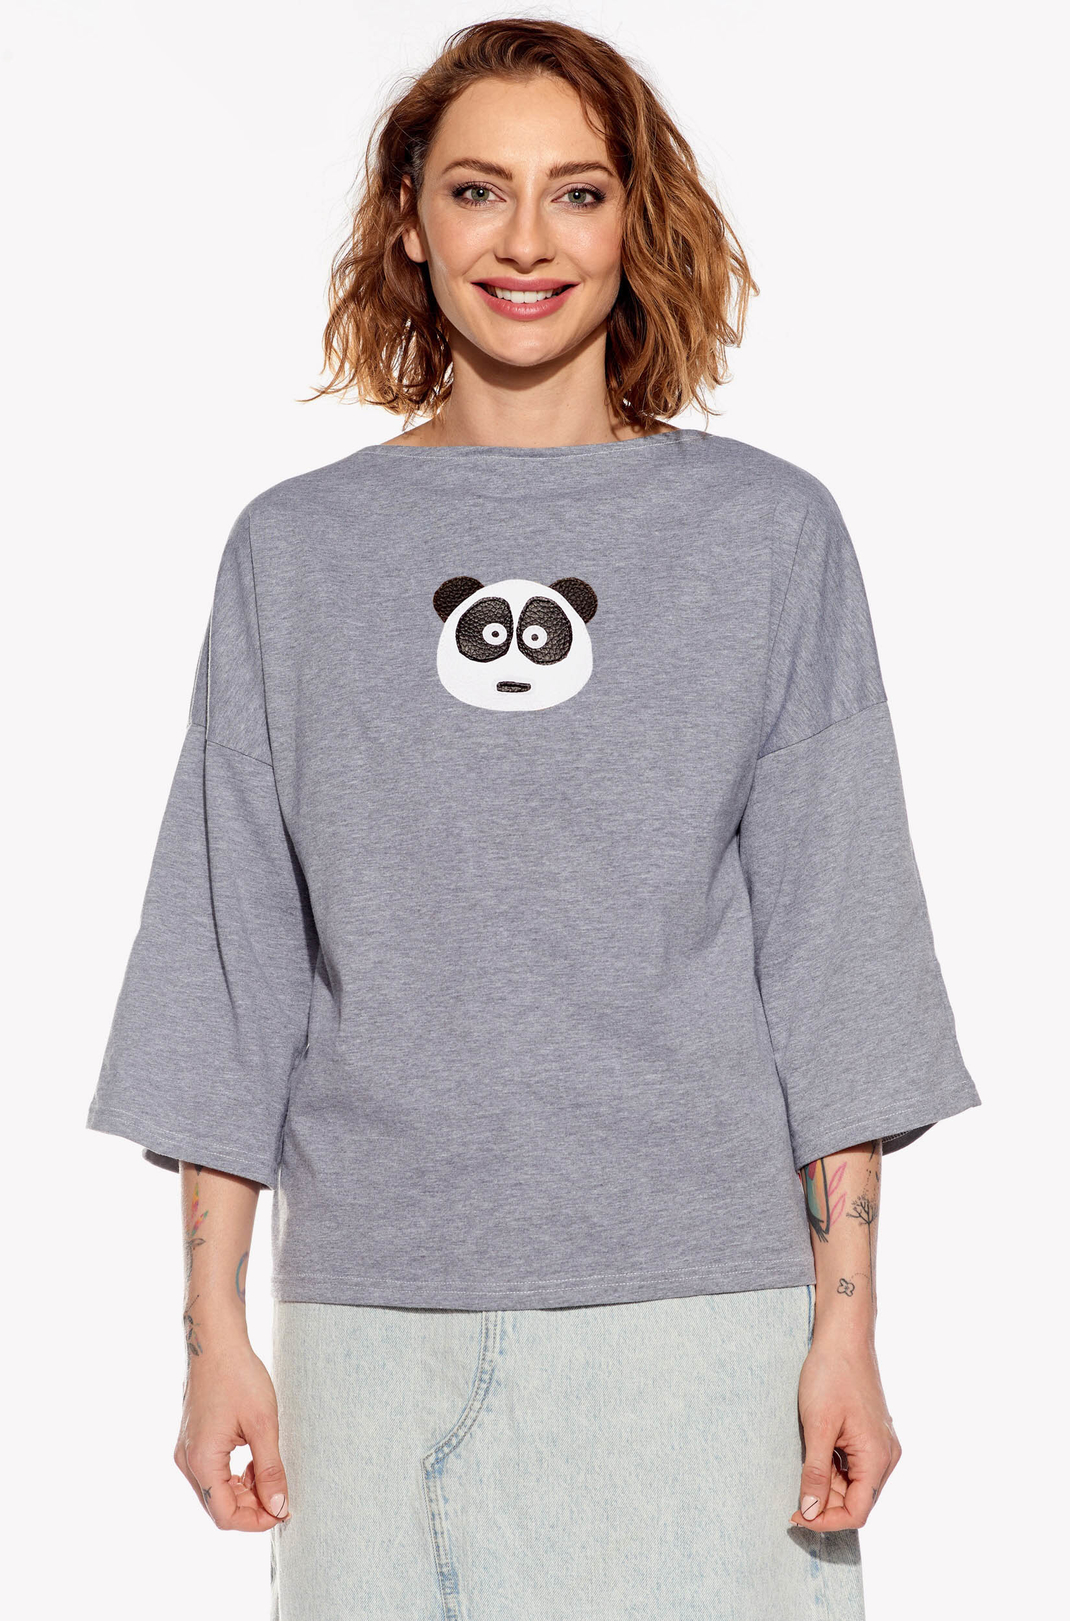 Shirt with panda bear